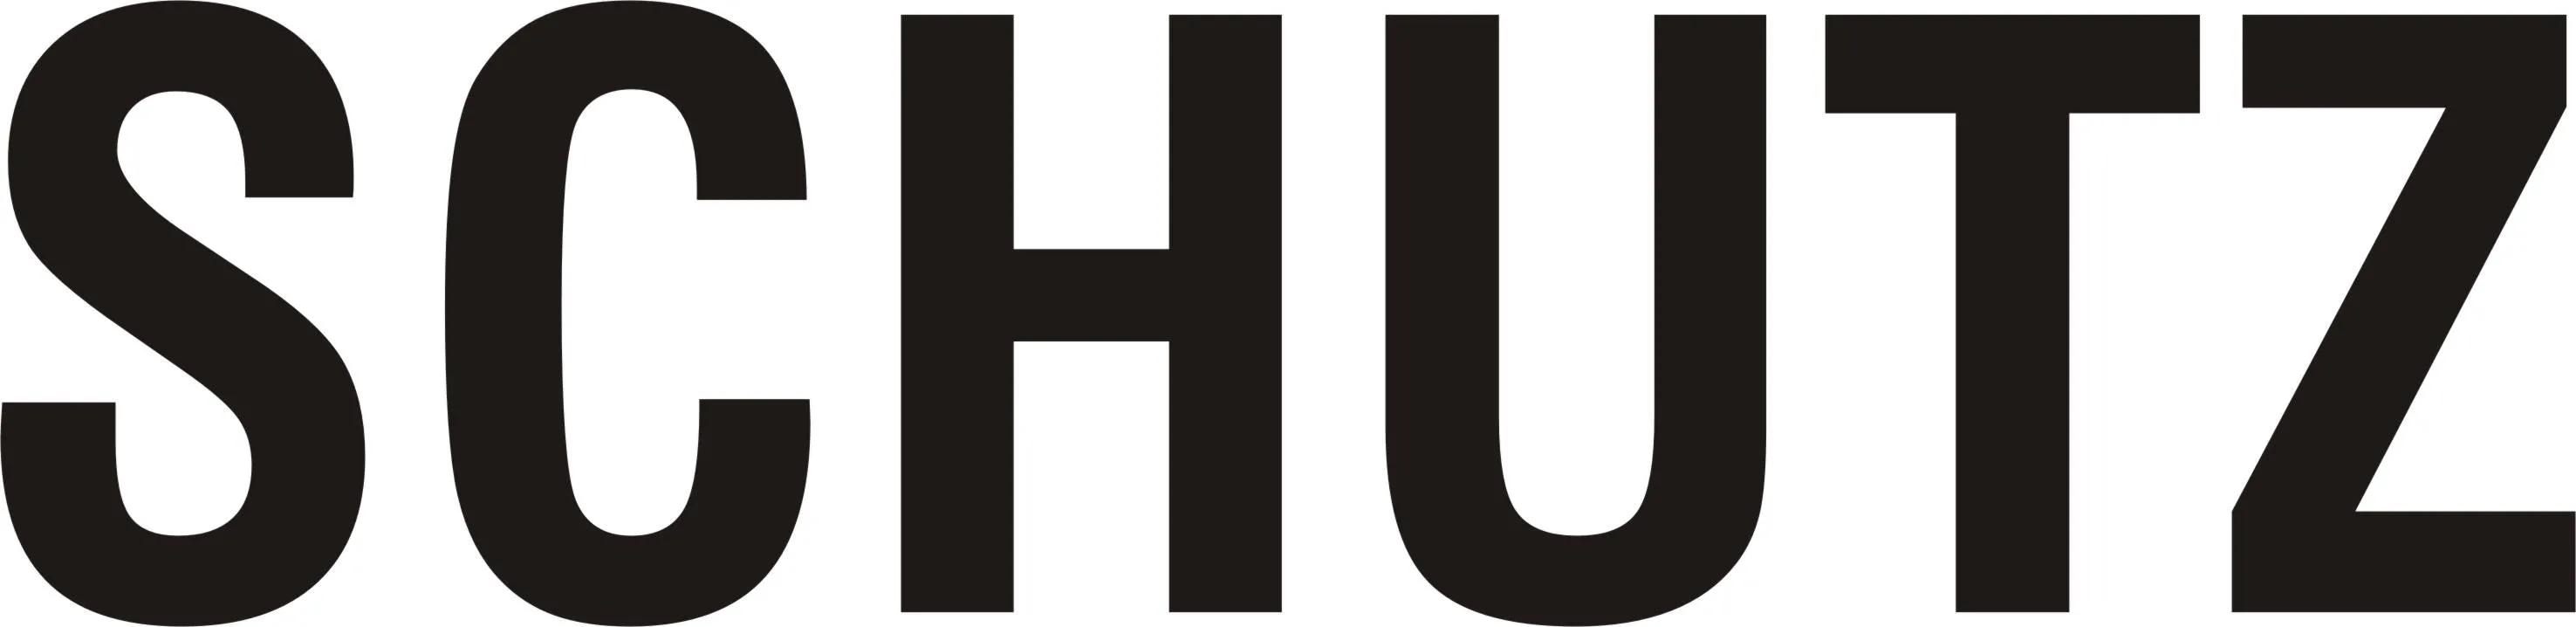 Logo for schutz